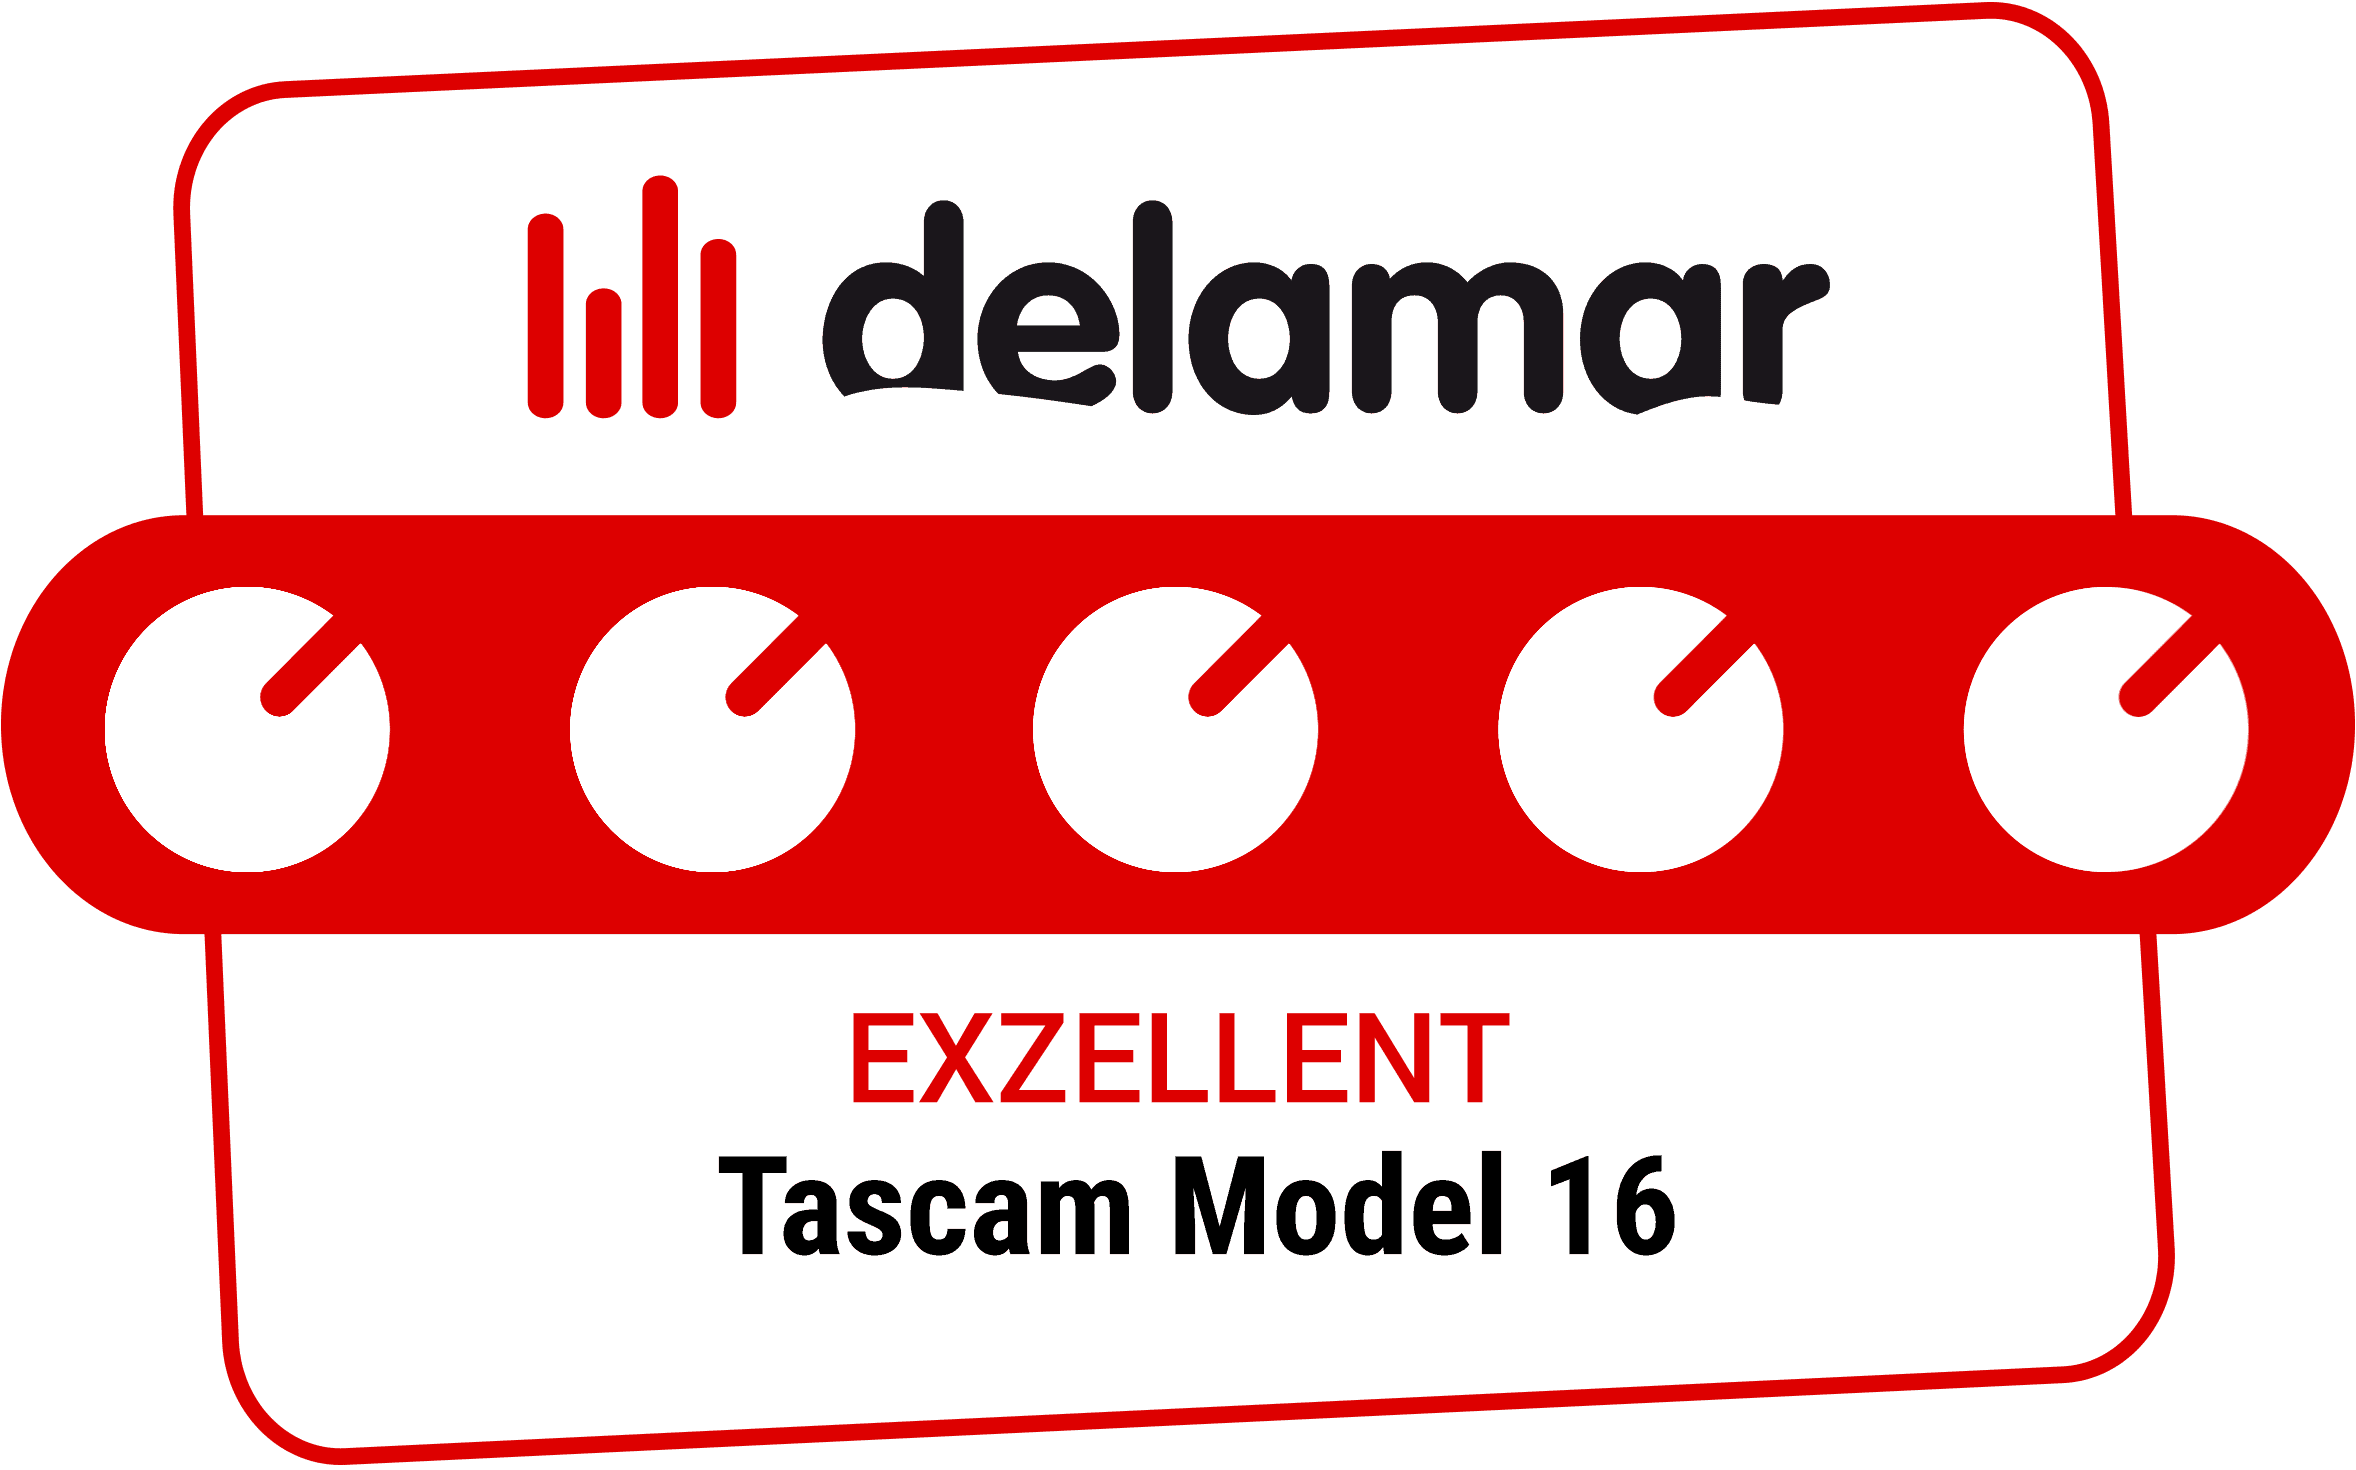 Delamar zeichnet das Tascam Model 16 mit 'Exzellent' aus